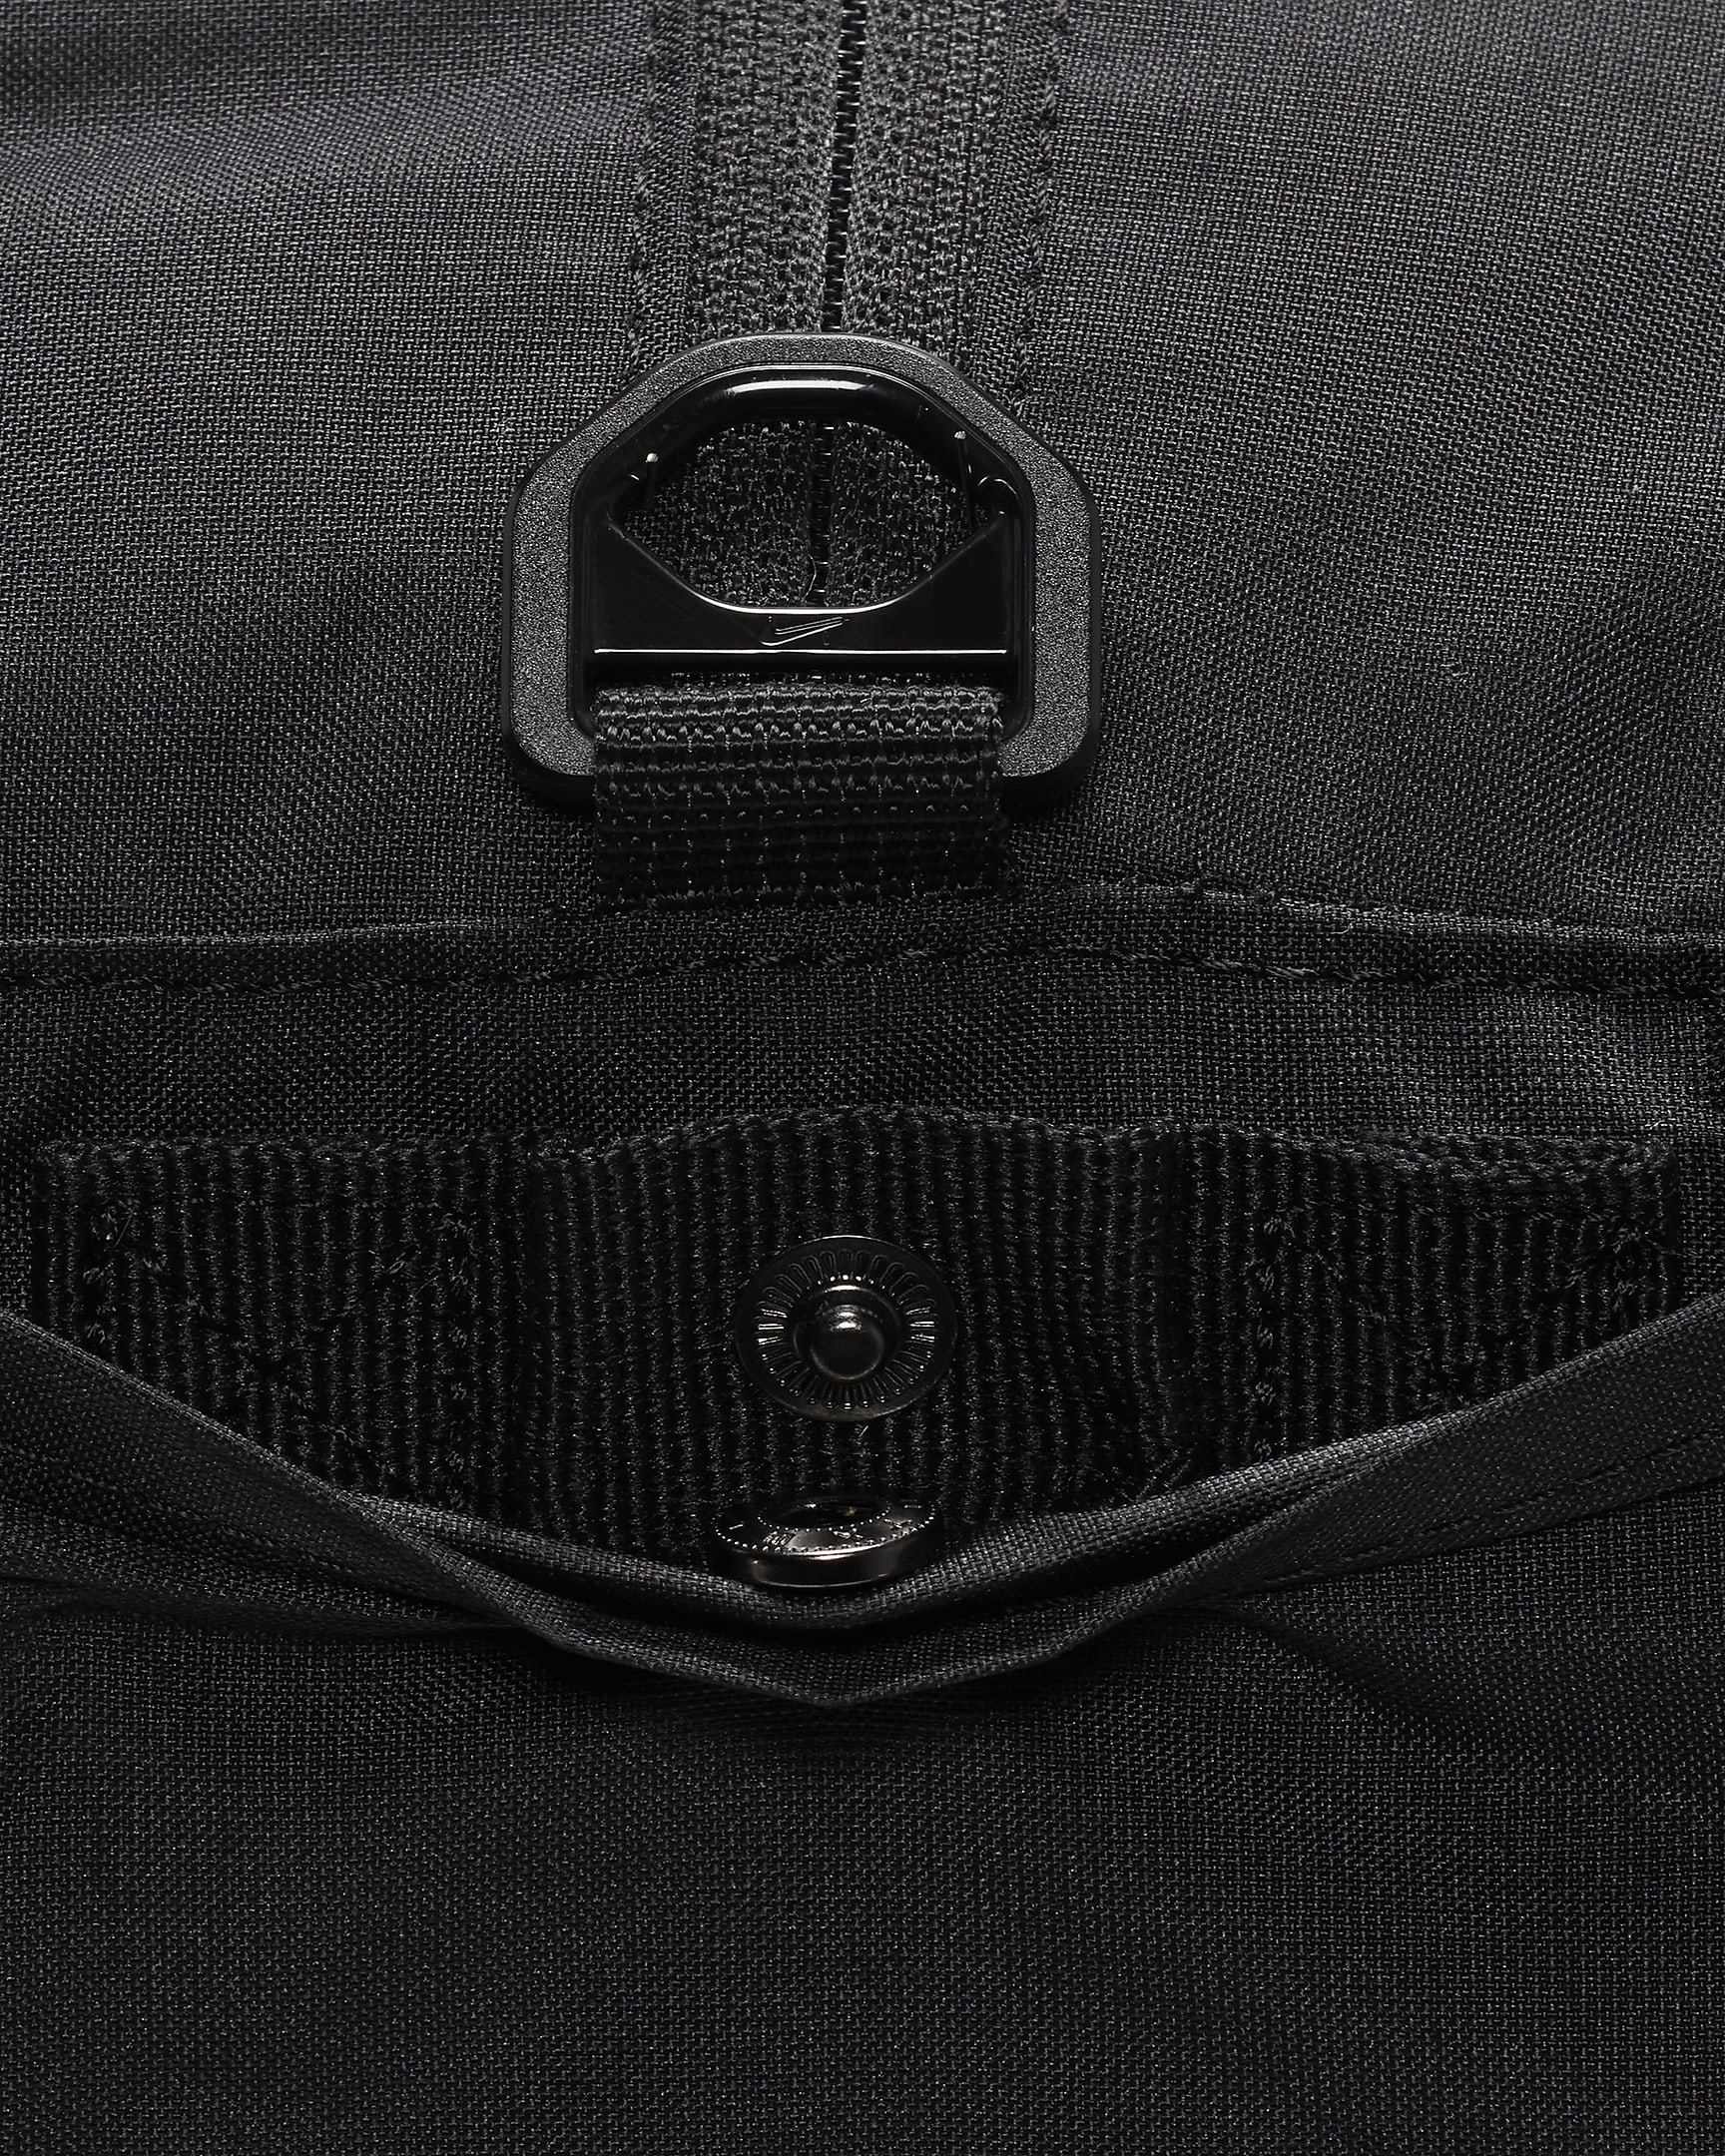 Nike Gym Club Duffel Bag (24L) - Black/Black/White